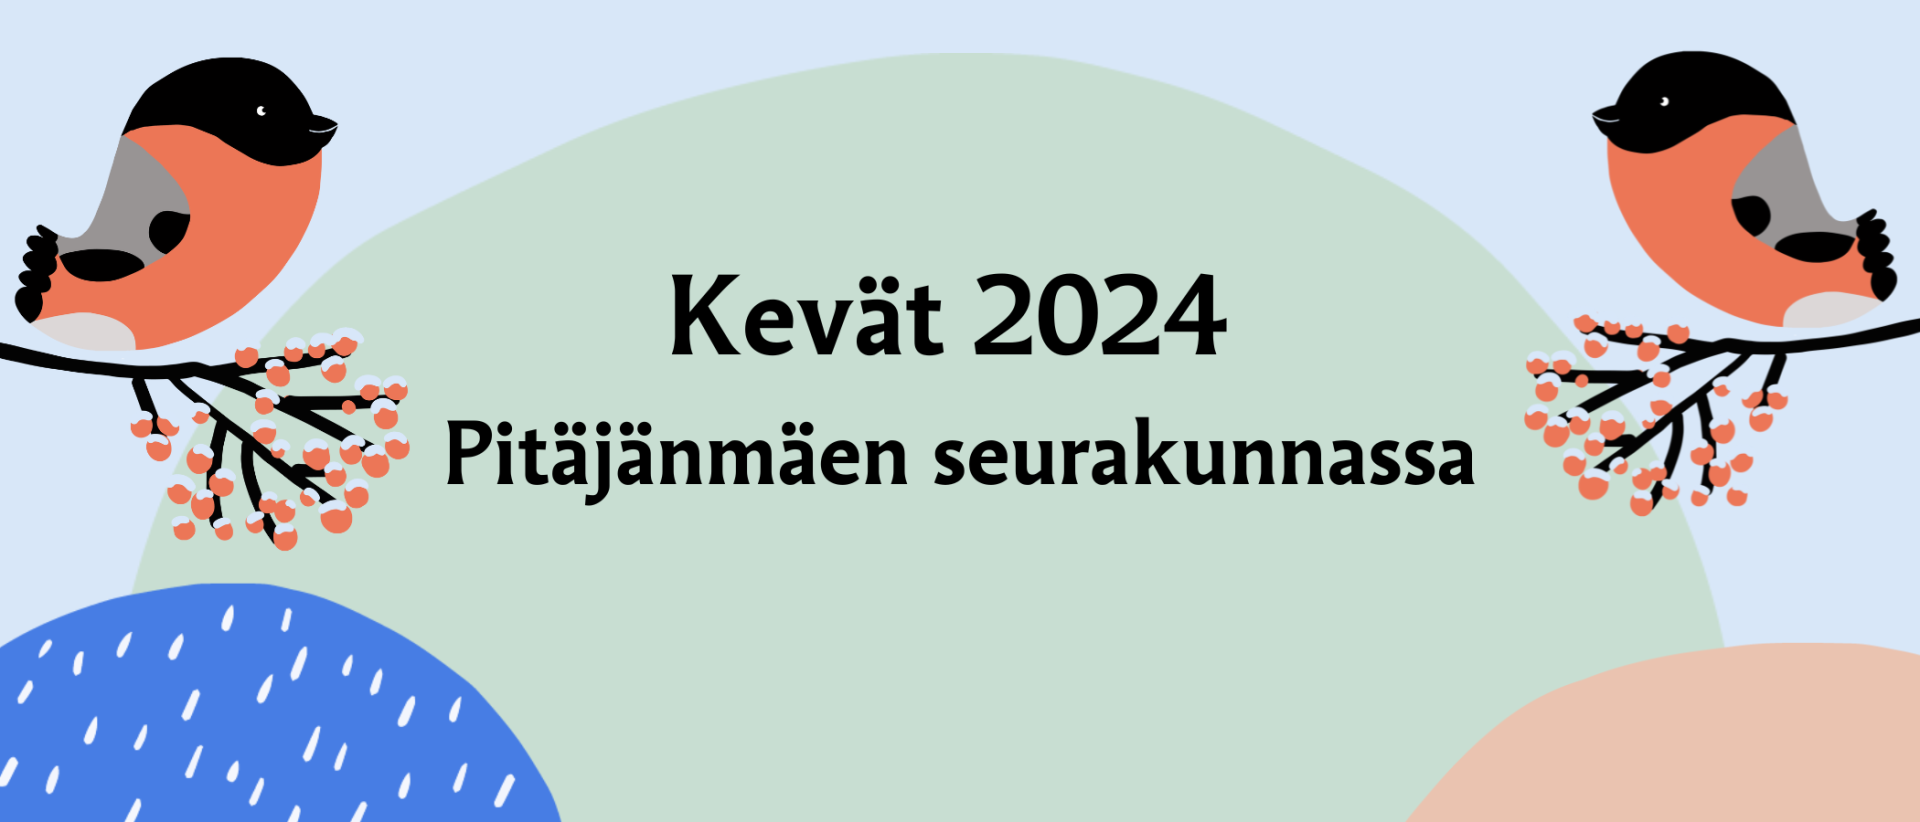 Piirroskuvassa kaksi punatulkkua ja graafisia elementtejä sekä teksti: Kevät 2024 Pitäjänmäen seurakunnassa